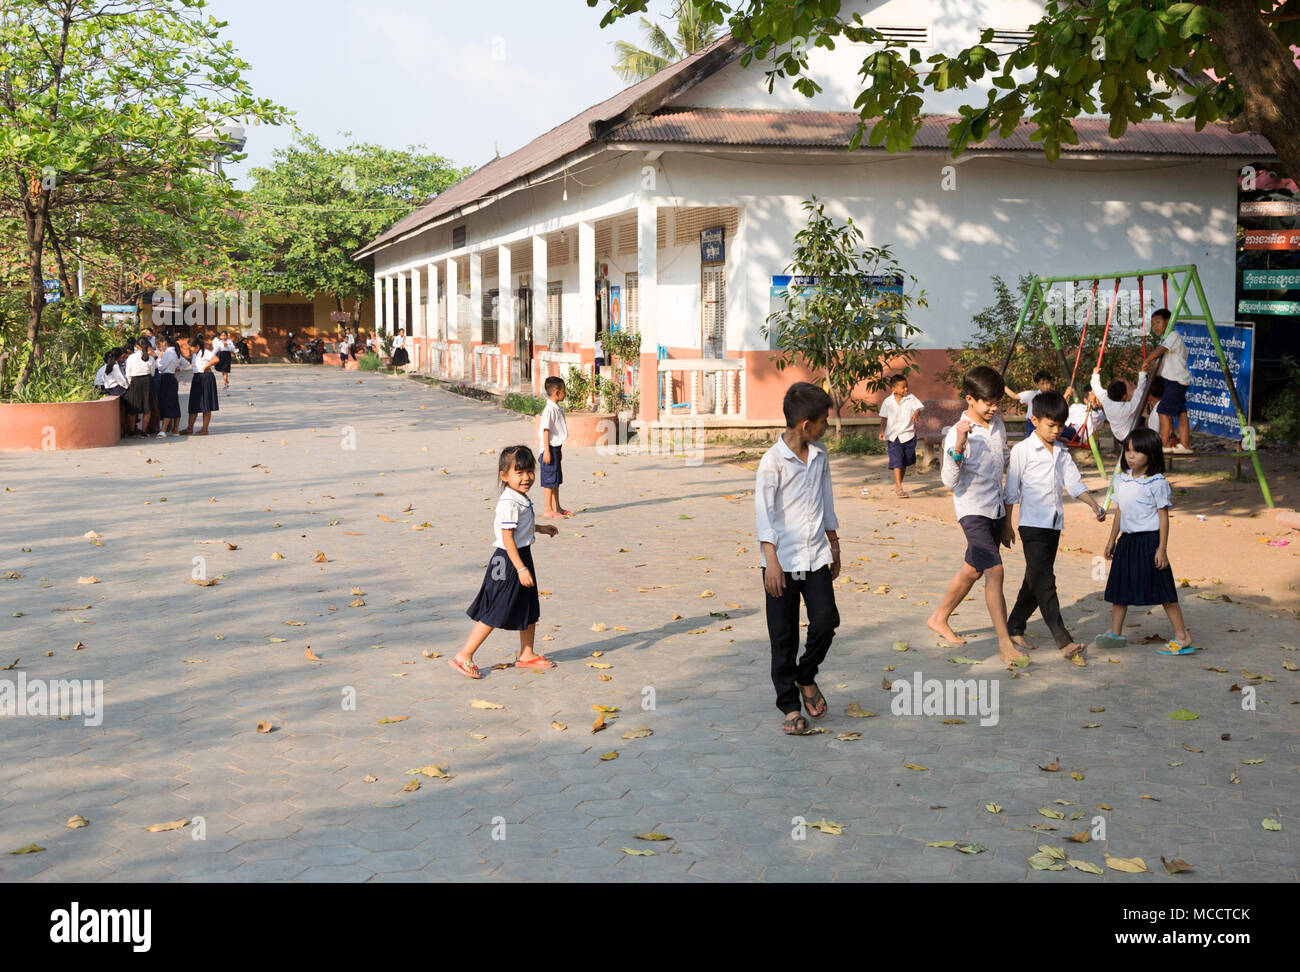 Les enfants de l'école d'Asie Cambodge - les enfants de l'école primaire à l'école, aire de jeux, Siem Reap, Cambodge, Asie Banque D'Images